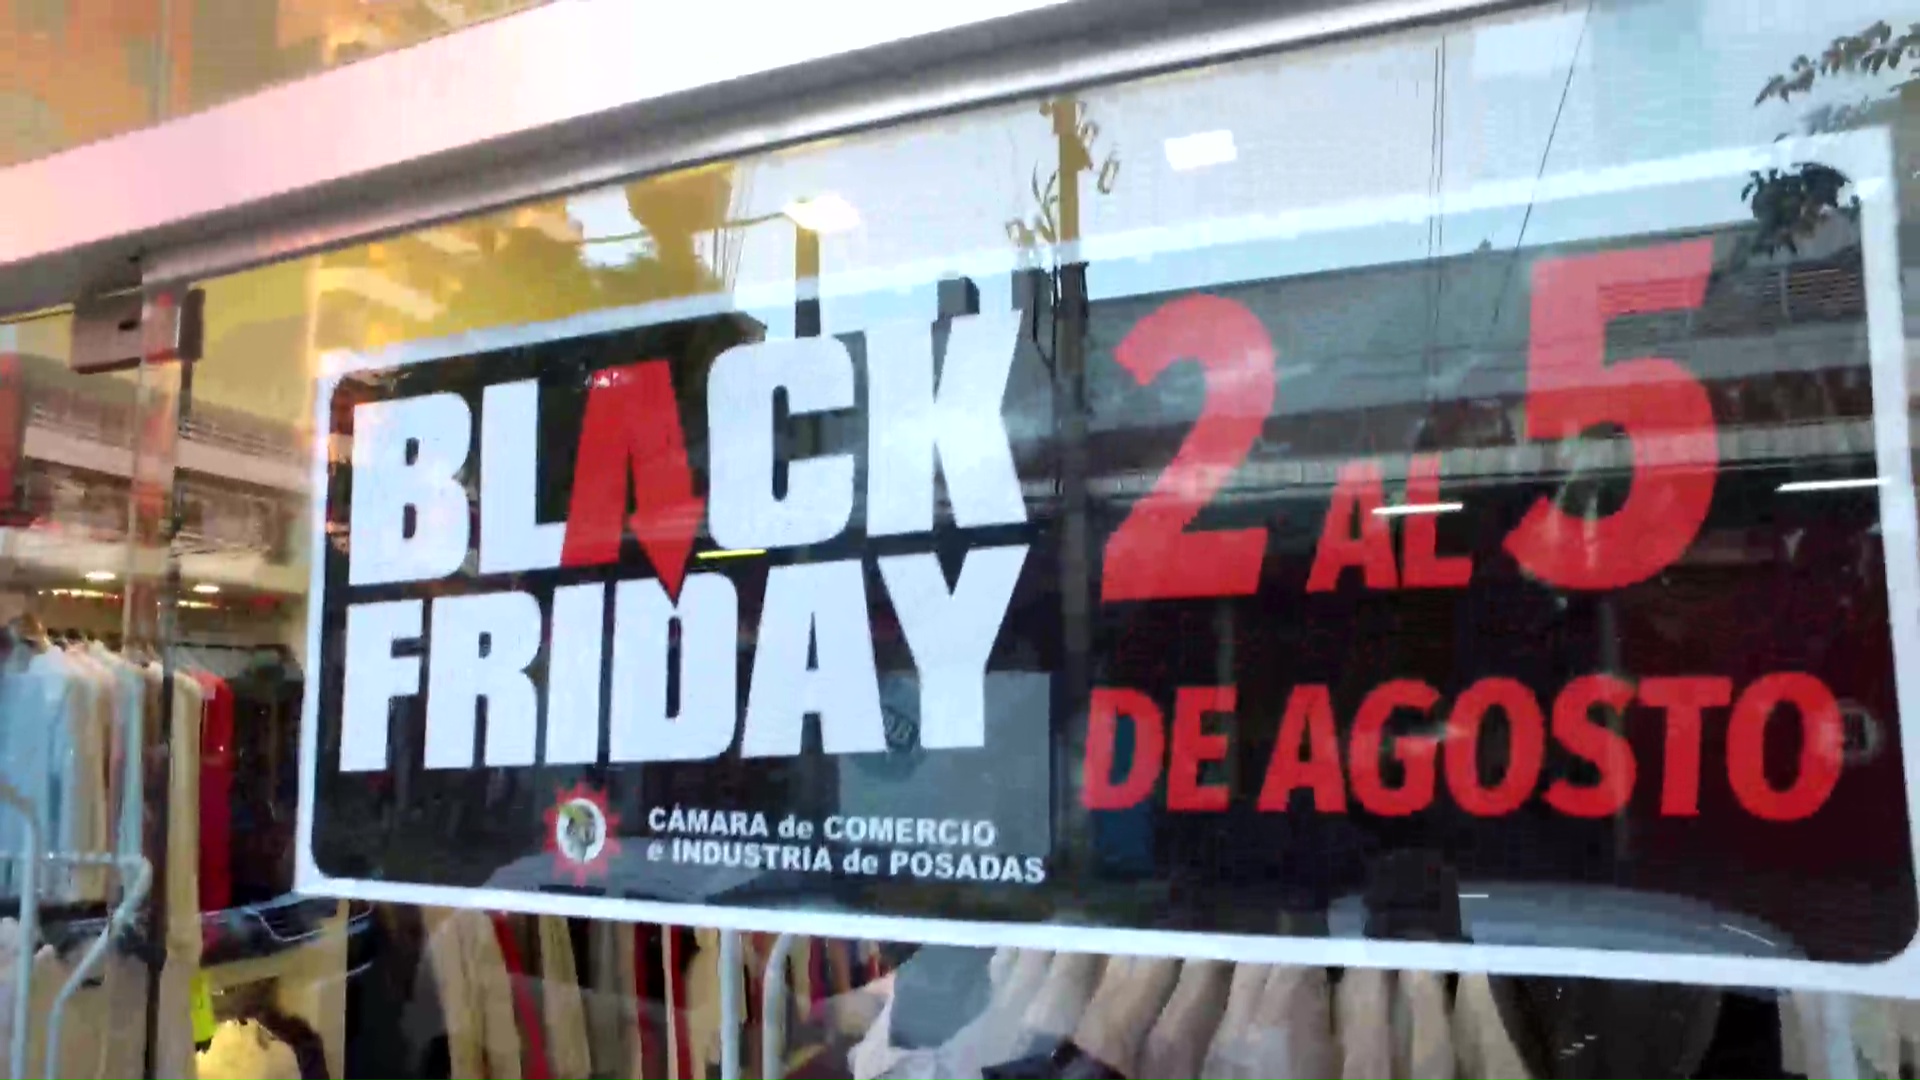 “El Black Friday no solo hace a la economía de quien vende, sino también a los que compran”